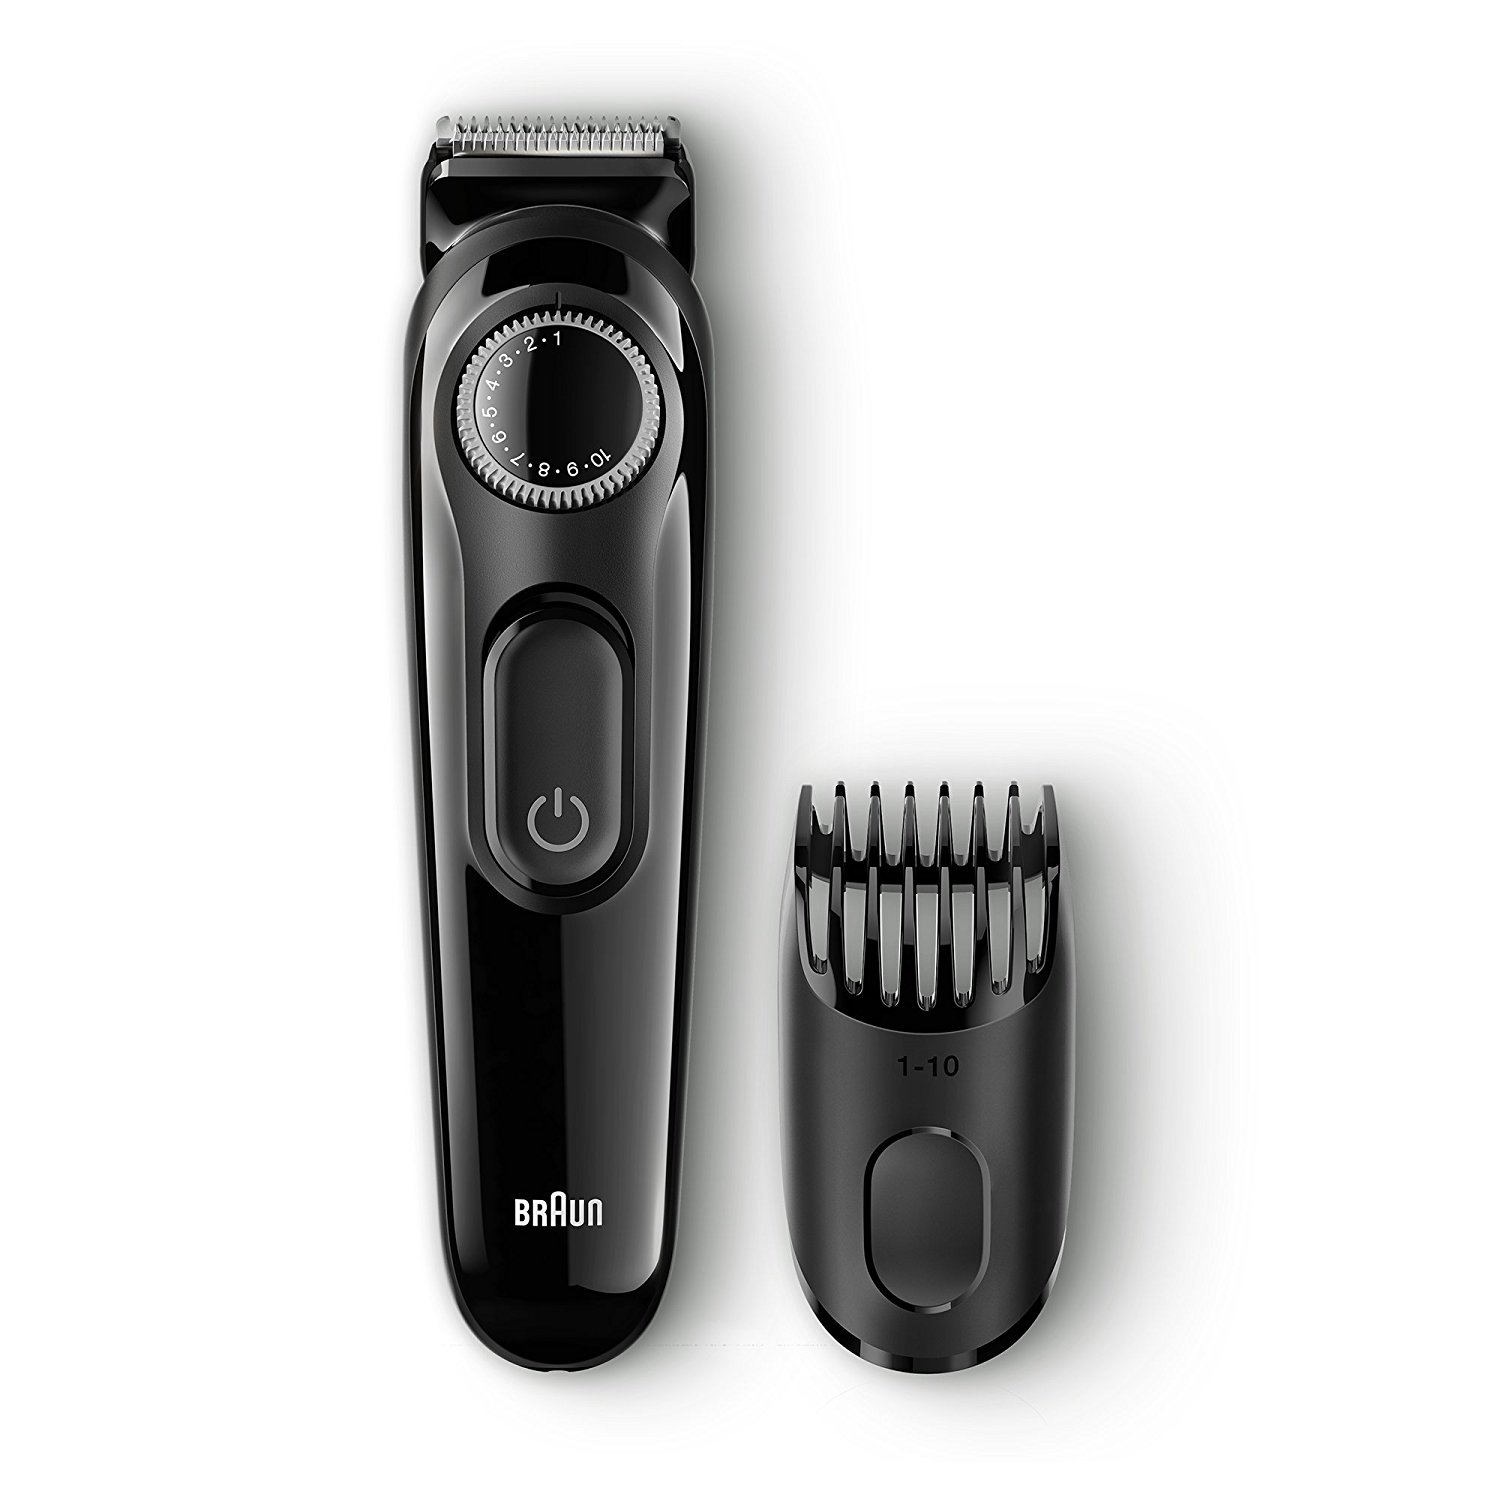 Braun BT3020 Beard/Hair Trimmer for Men Review